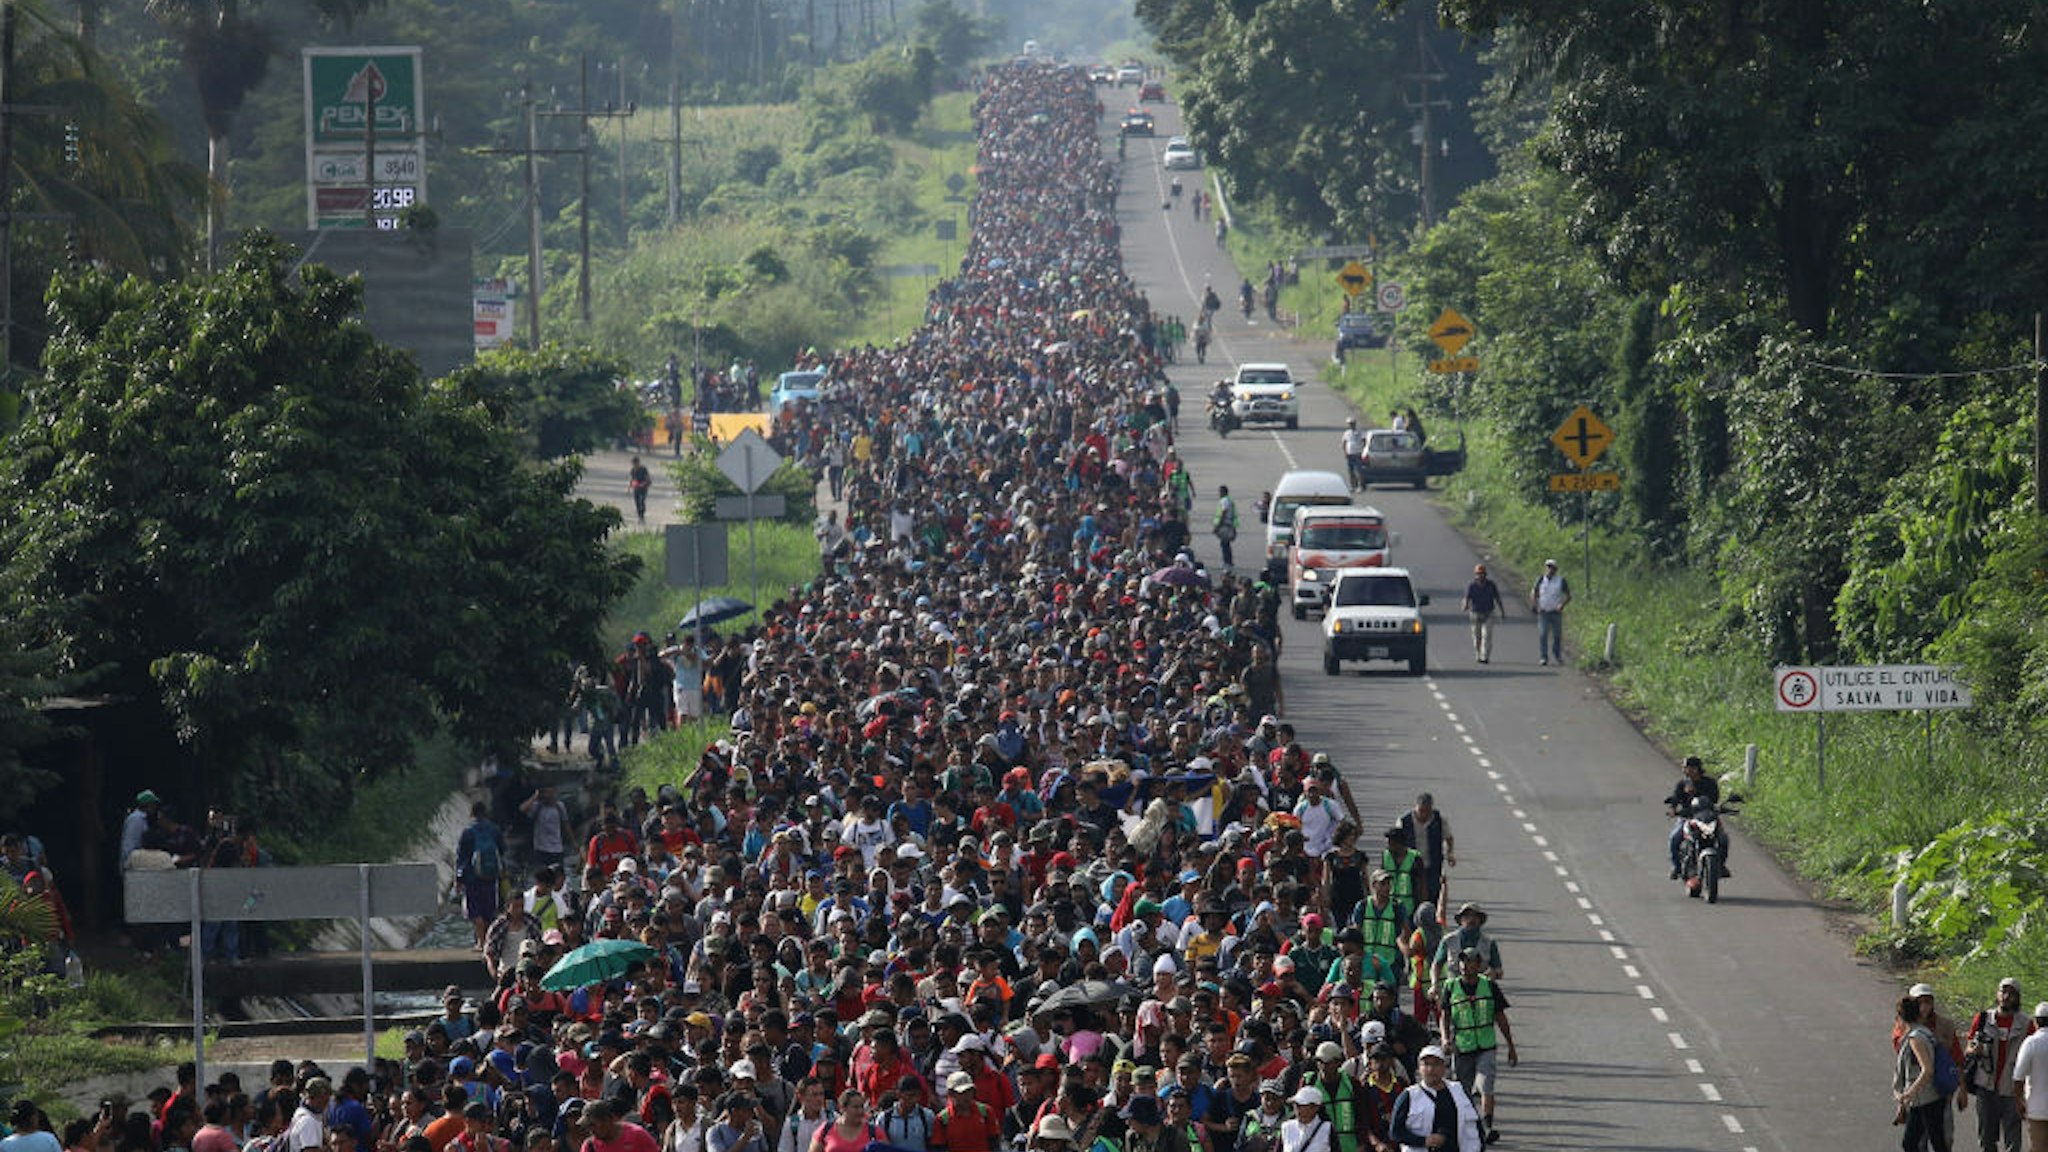 A migrant caravan walks into the interior of Mexico after crossing the Guatemalan border on October 21, 2018 near Ciudad Hidalgo, Mexico